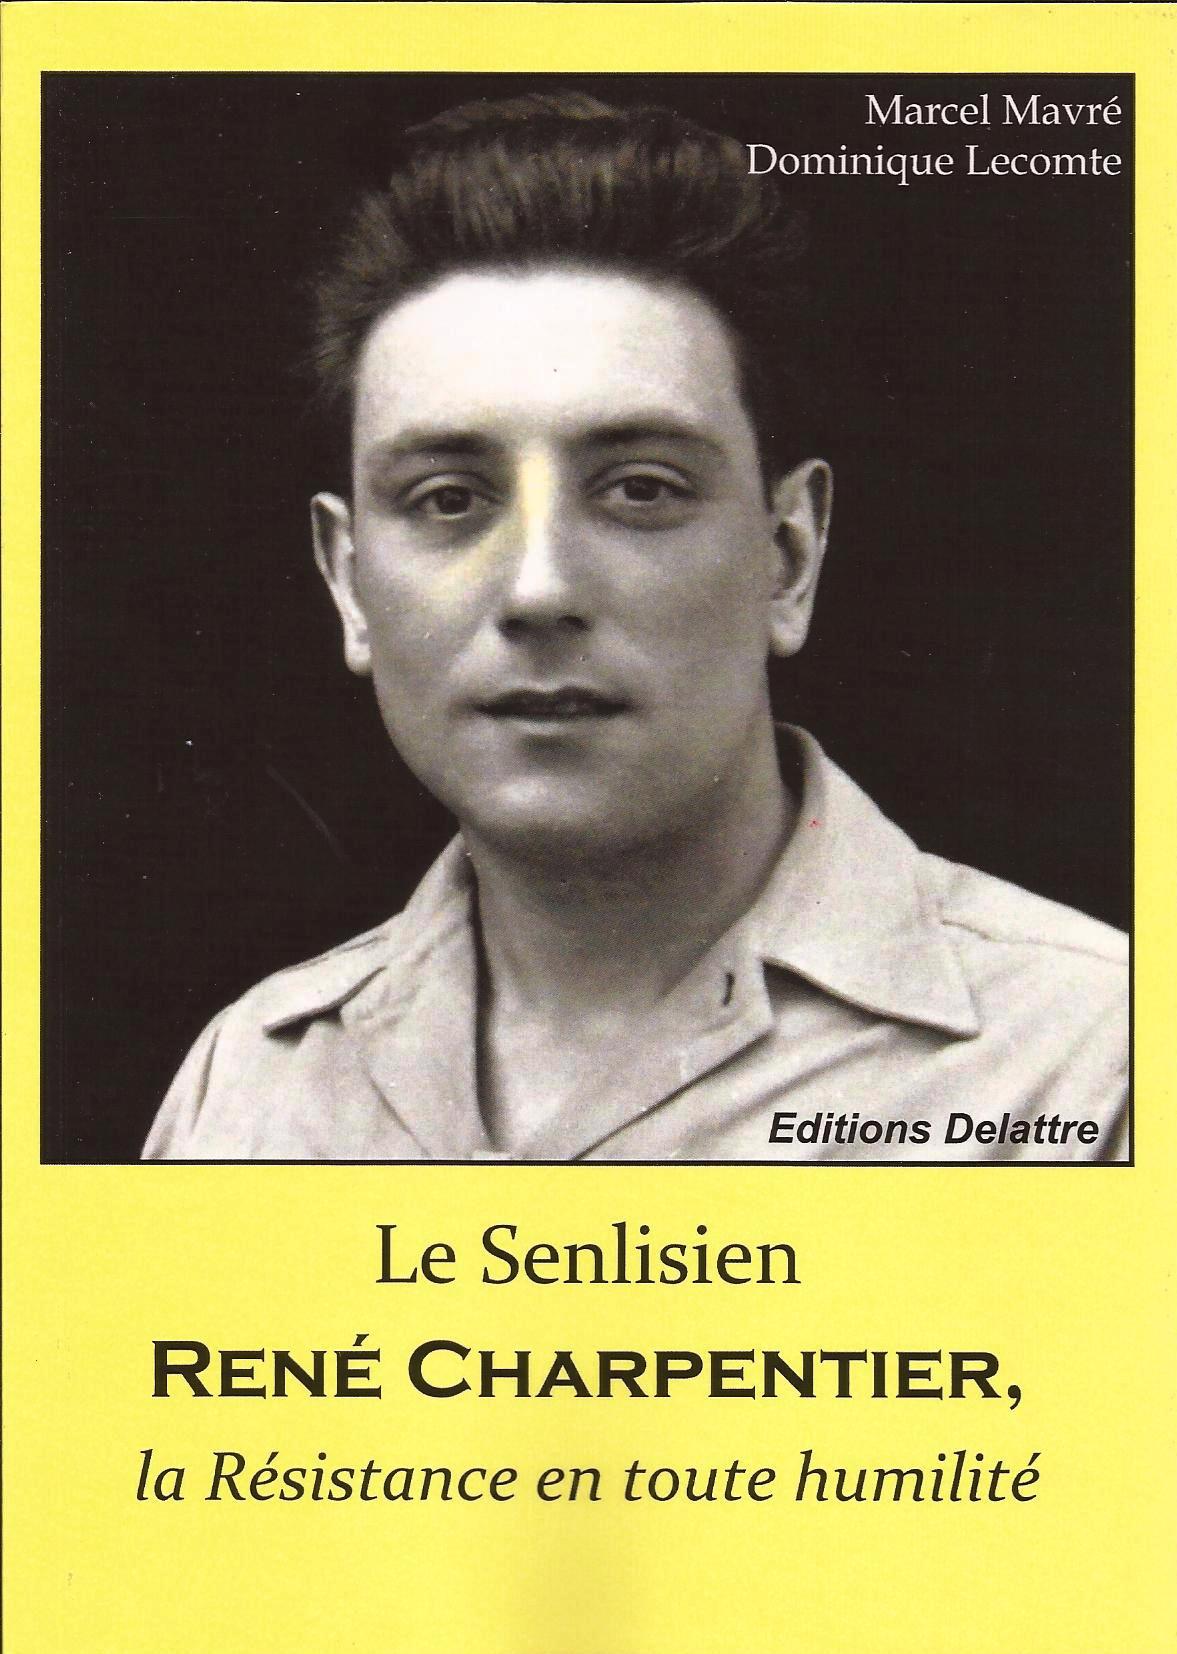 Rene Charpentier